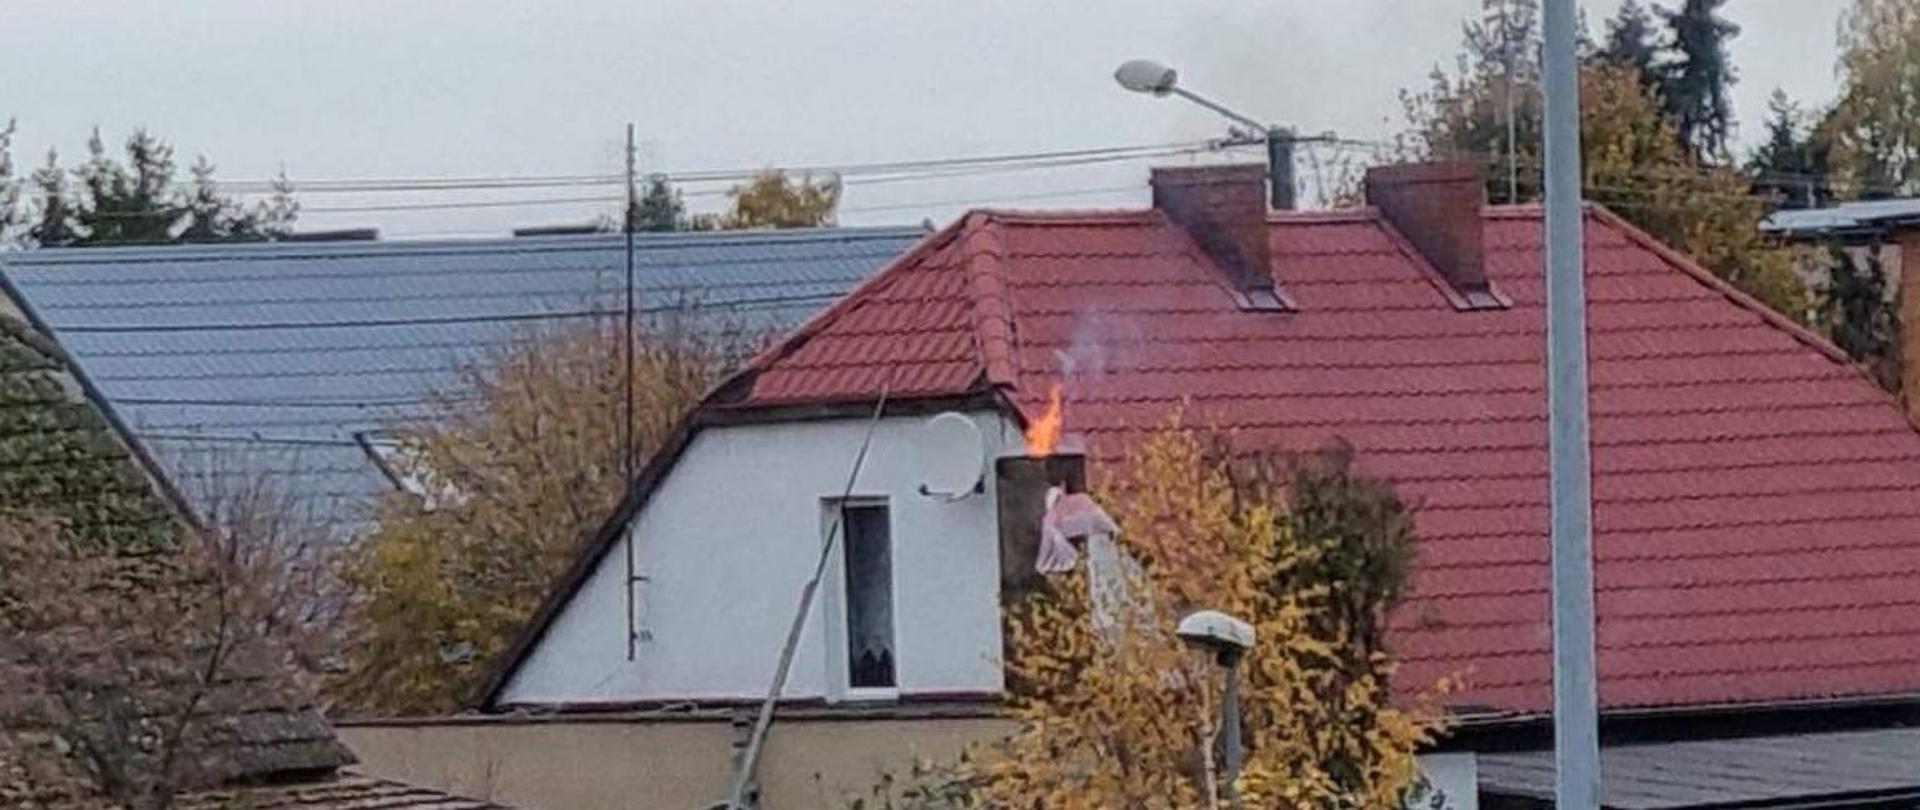 Ogień wydobywający się z komina budynku mieszkalnego